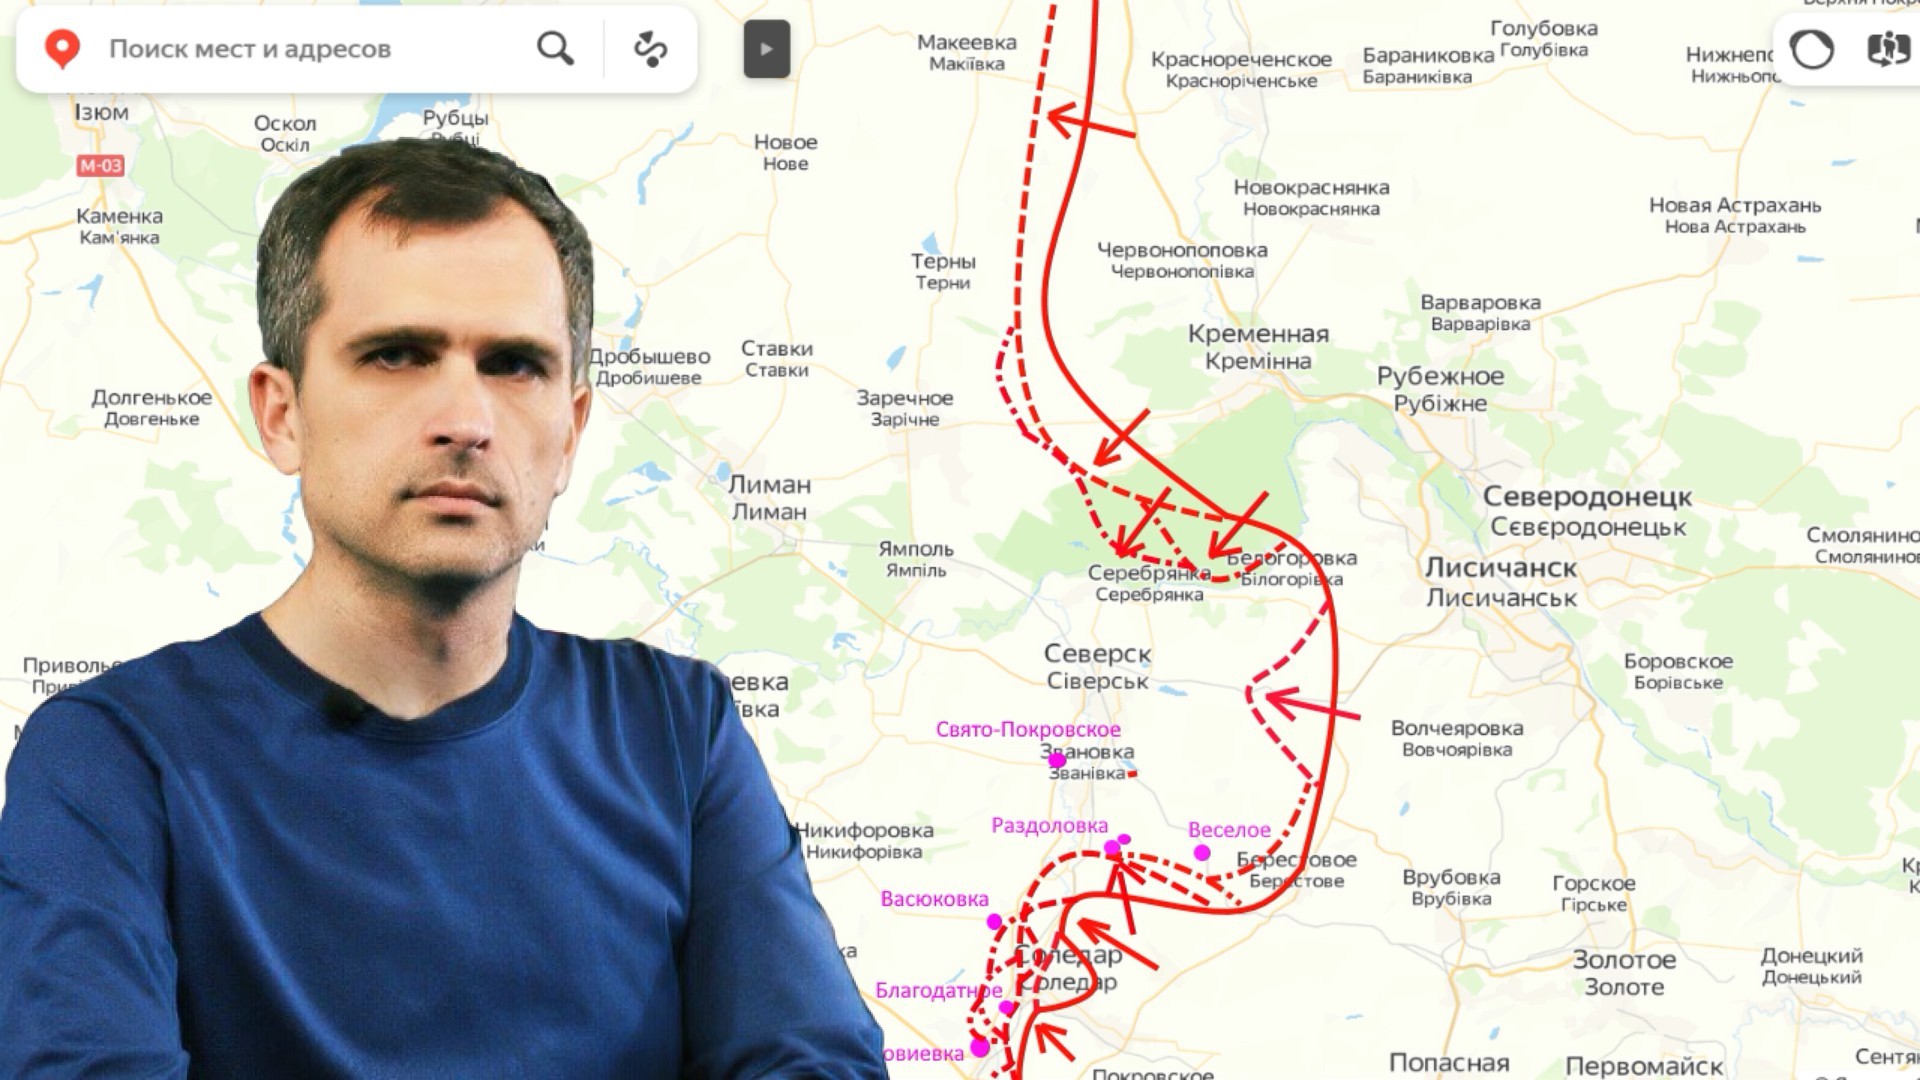 Новости украины 30.03 24. Карта боевых действий на Украине Подоляка.